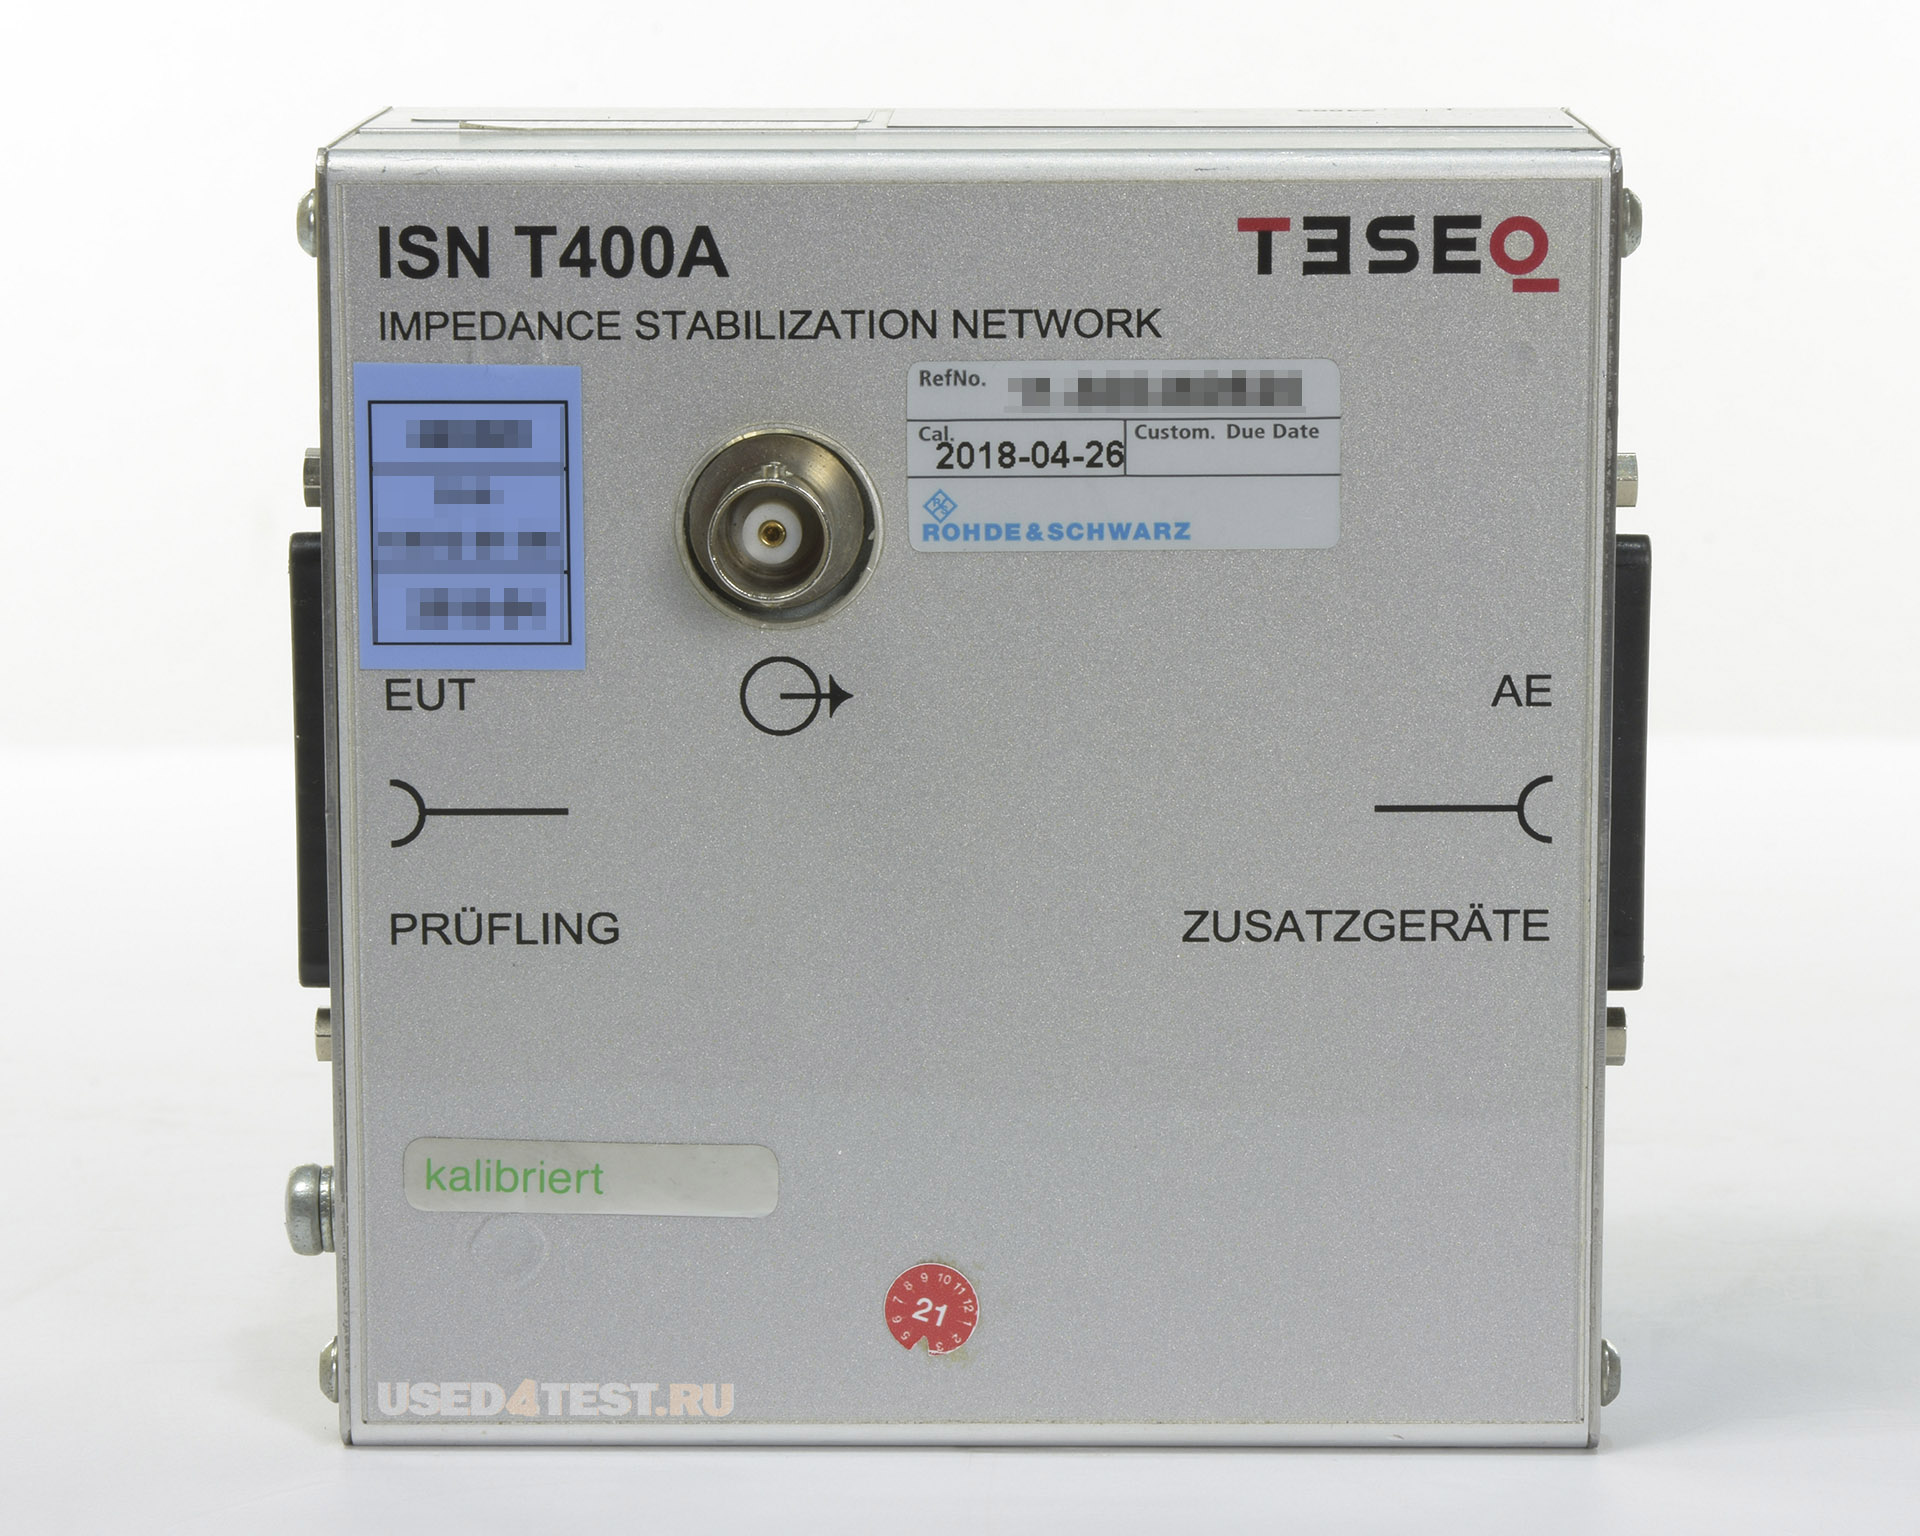 Эквивалент полного сопротивления сети для подключения до 2-х 2-проводных симметричных линийTESEQ ISN T400Aс диапазоном от 150 кГц до 80 МГц